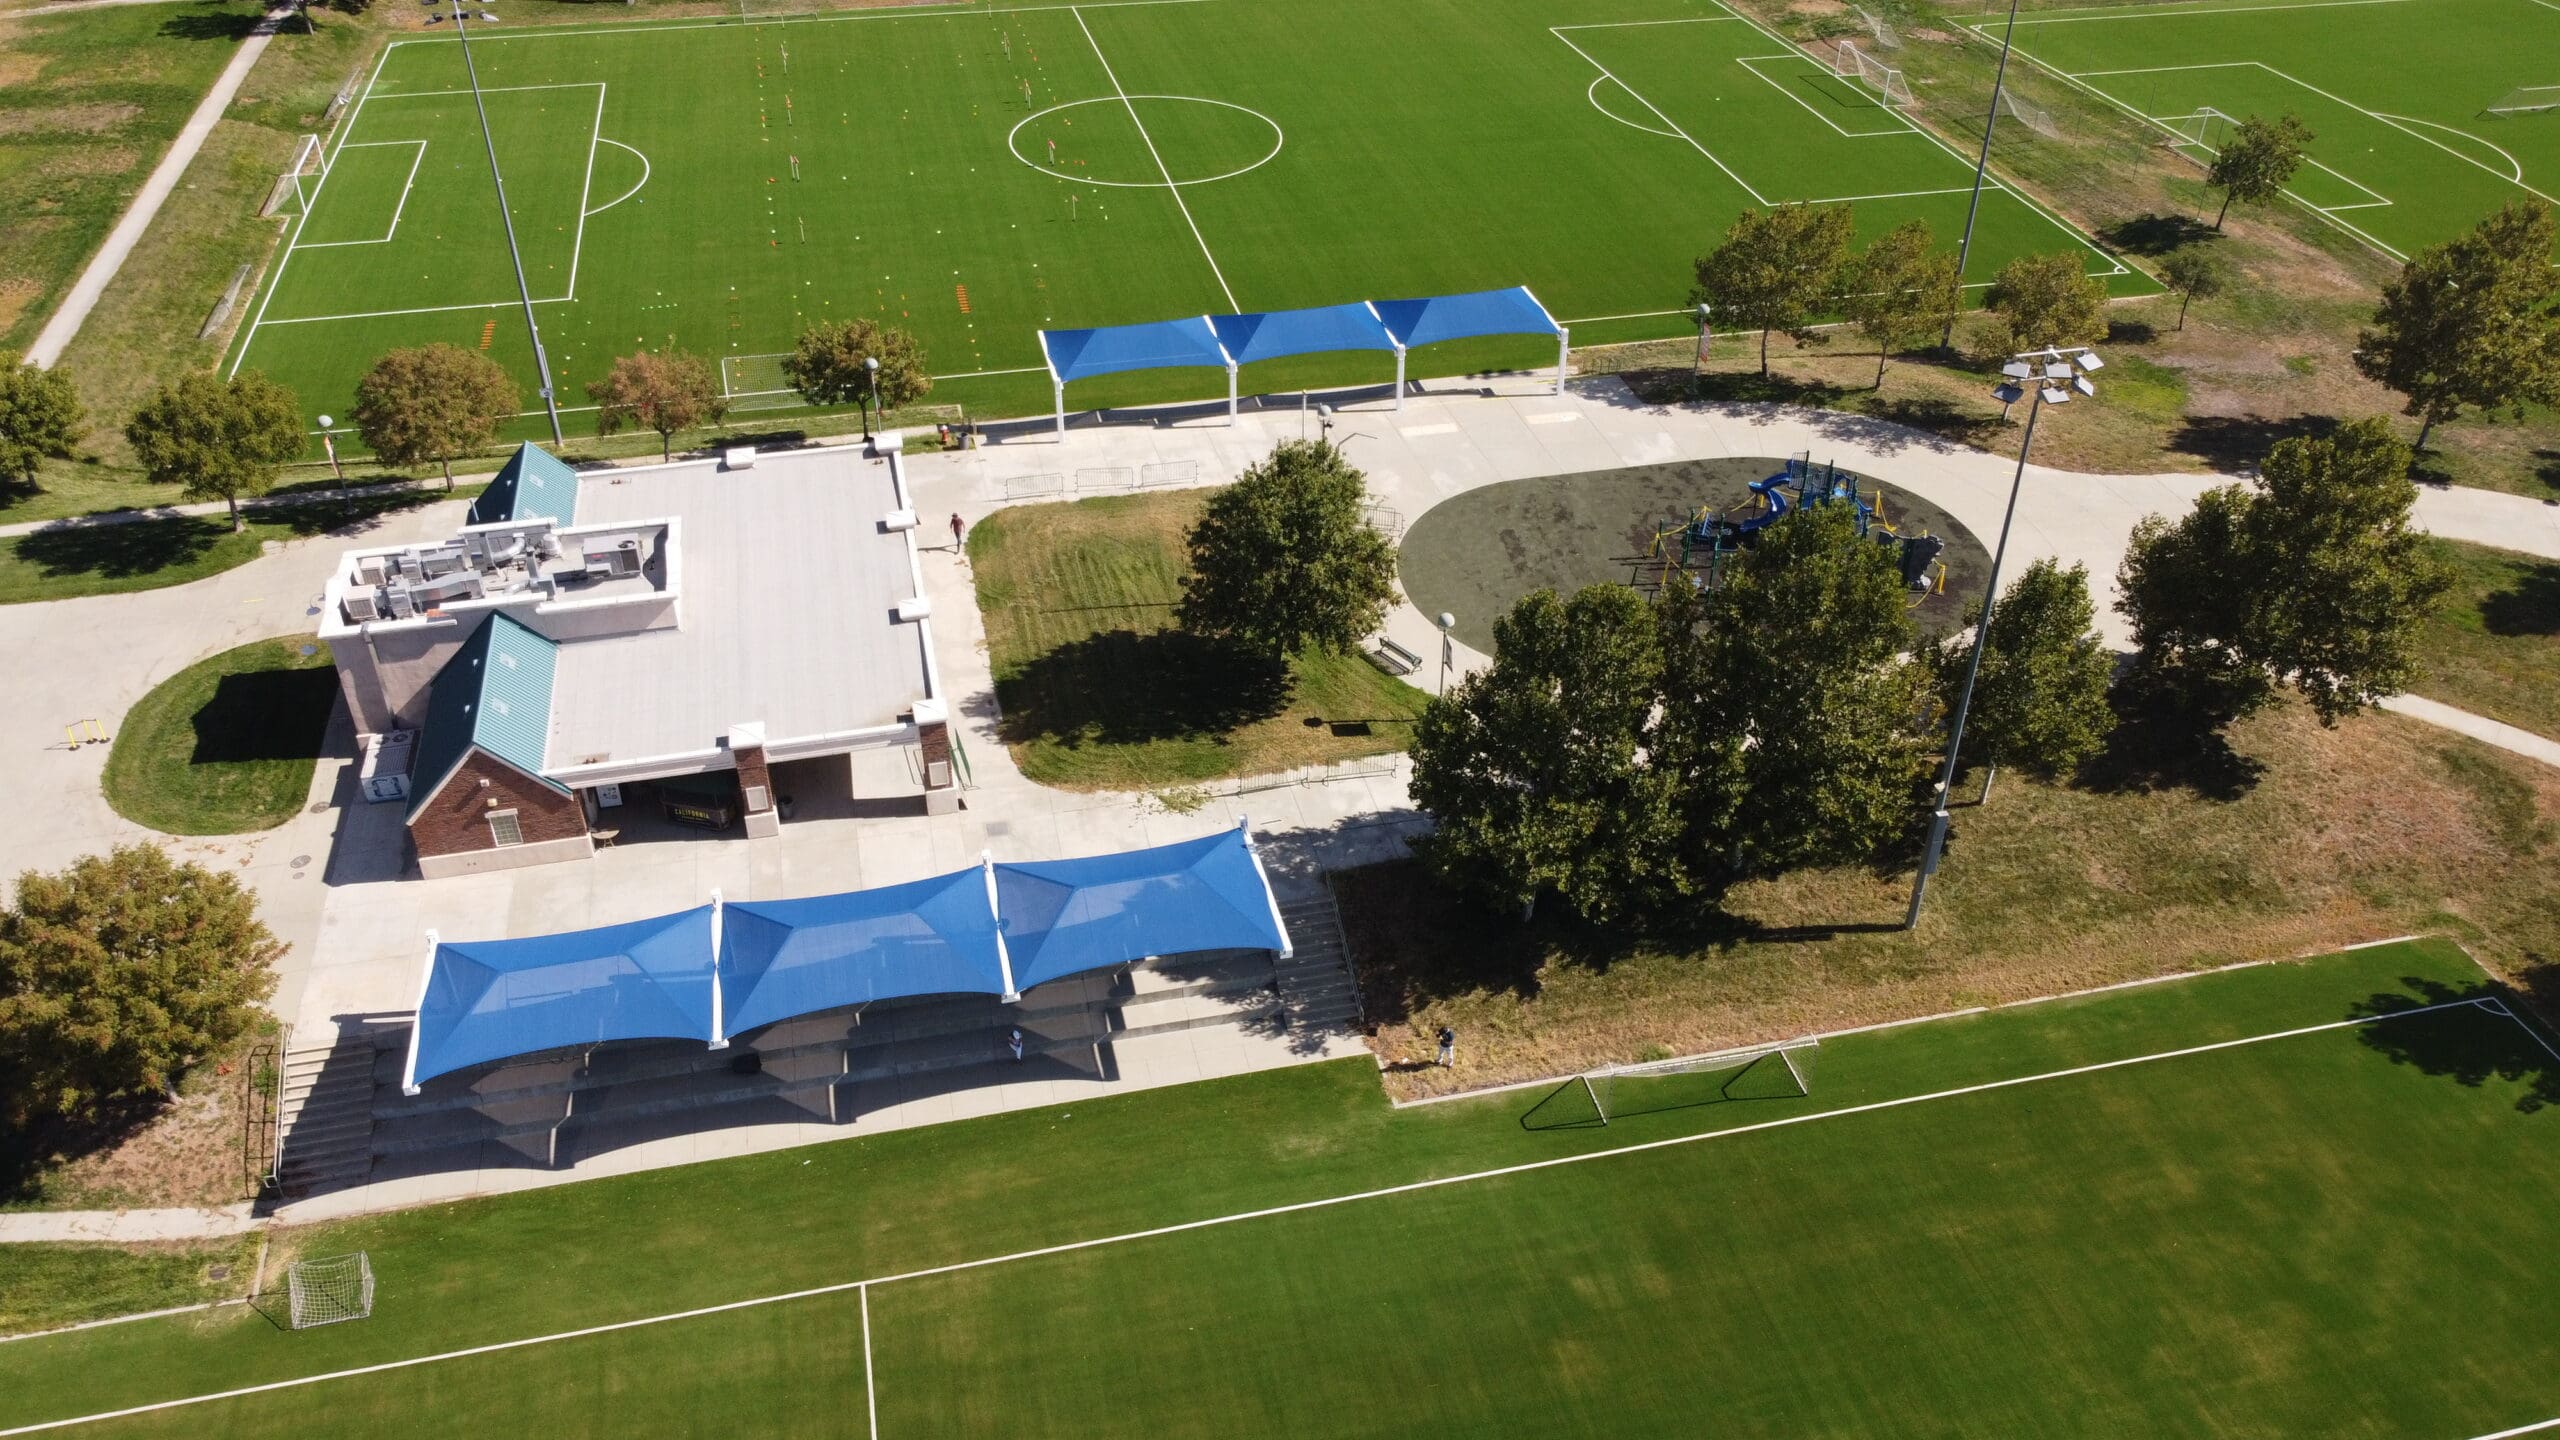 outdoor soccer field park